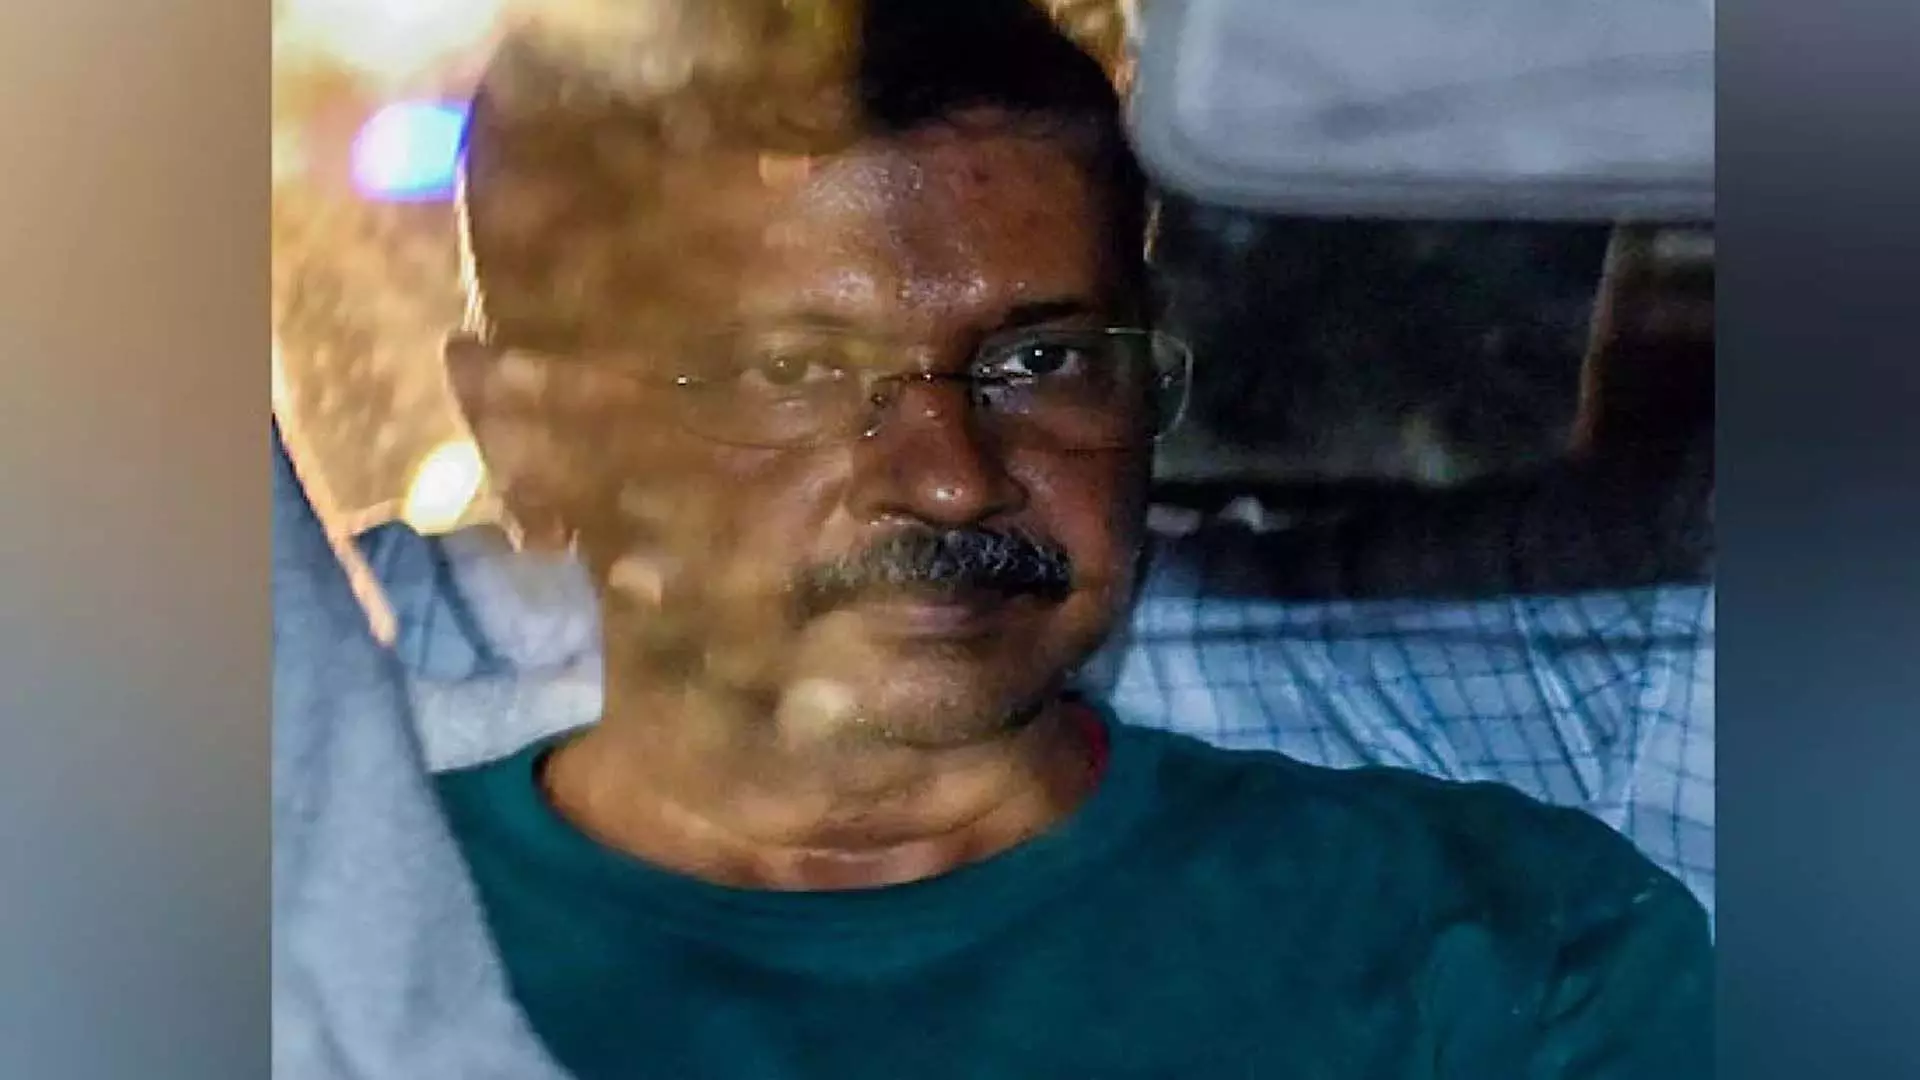 Delhi Excise Policy Case: अरविंद केजरीवाल की गिरफ्तारी के खिलाफ याचिका पर सुप्रीम कोर्ट आज सुनाएगा फैसला